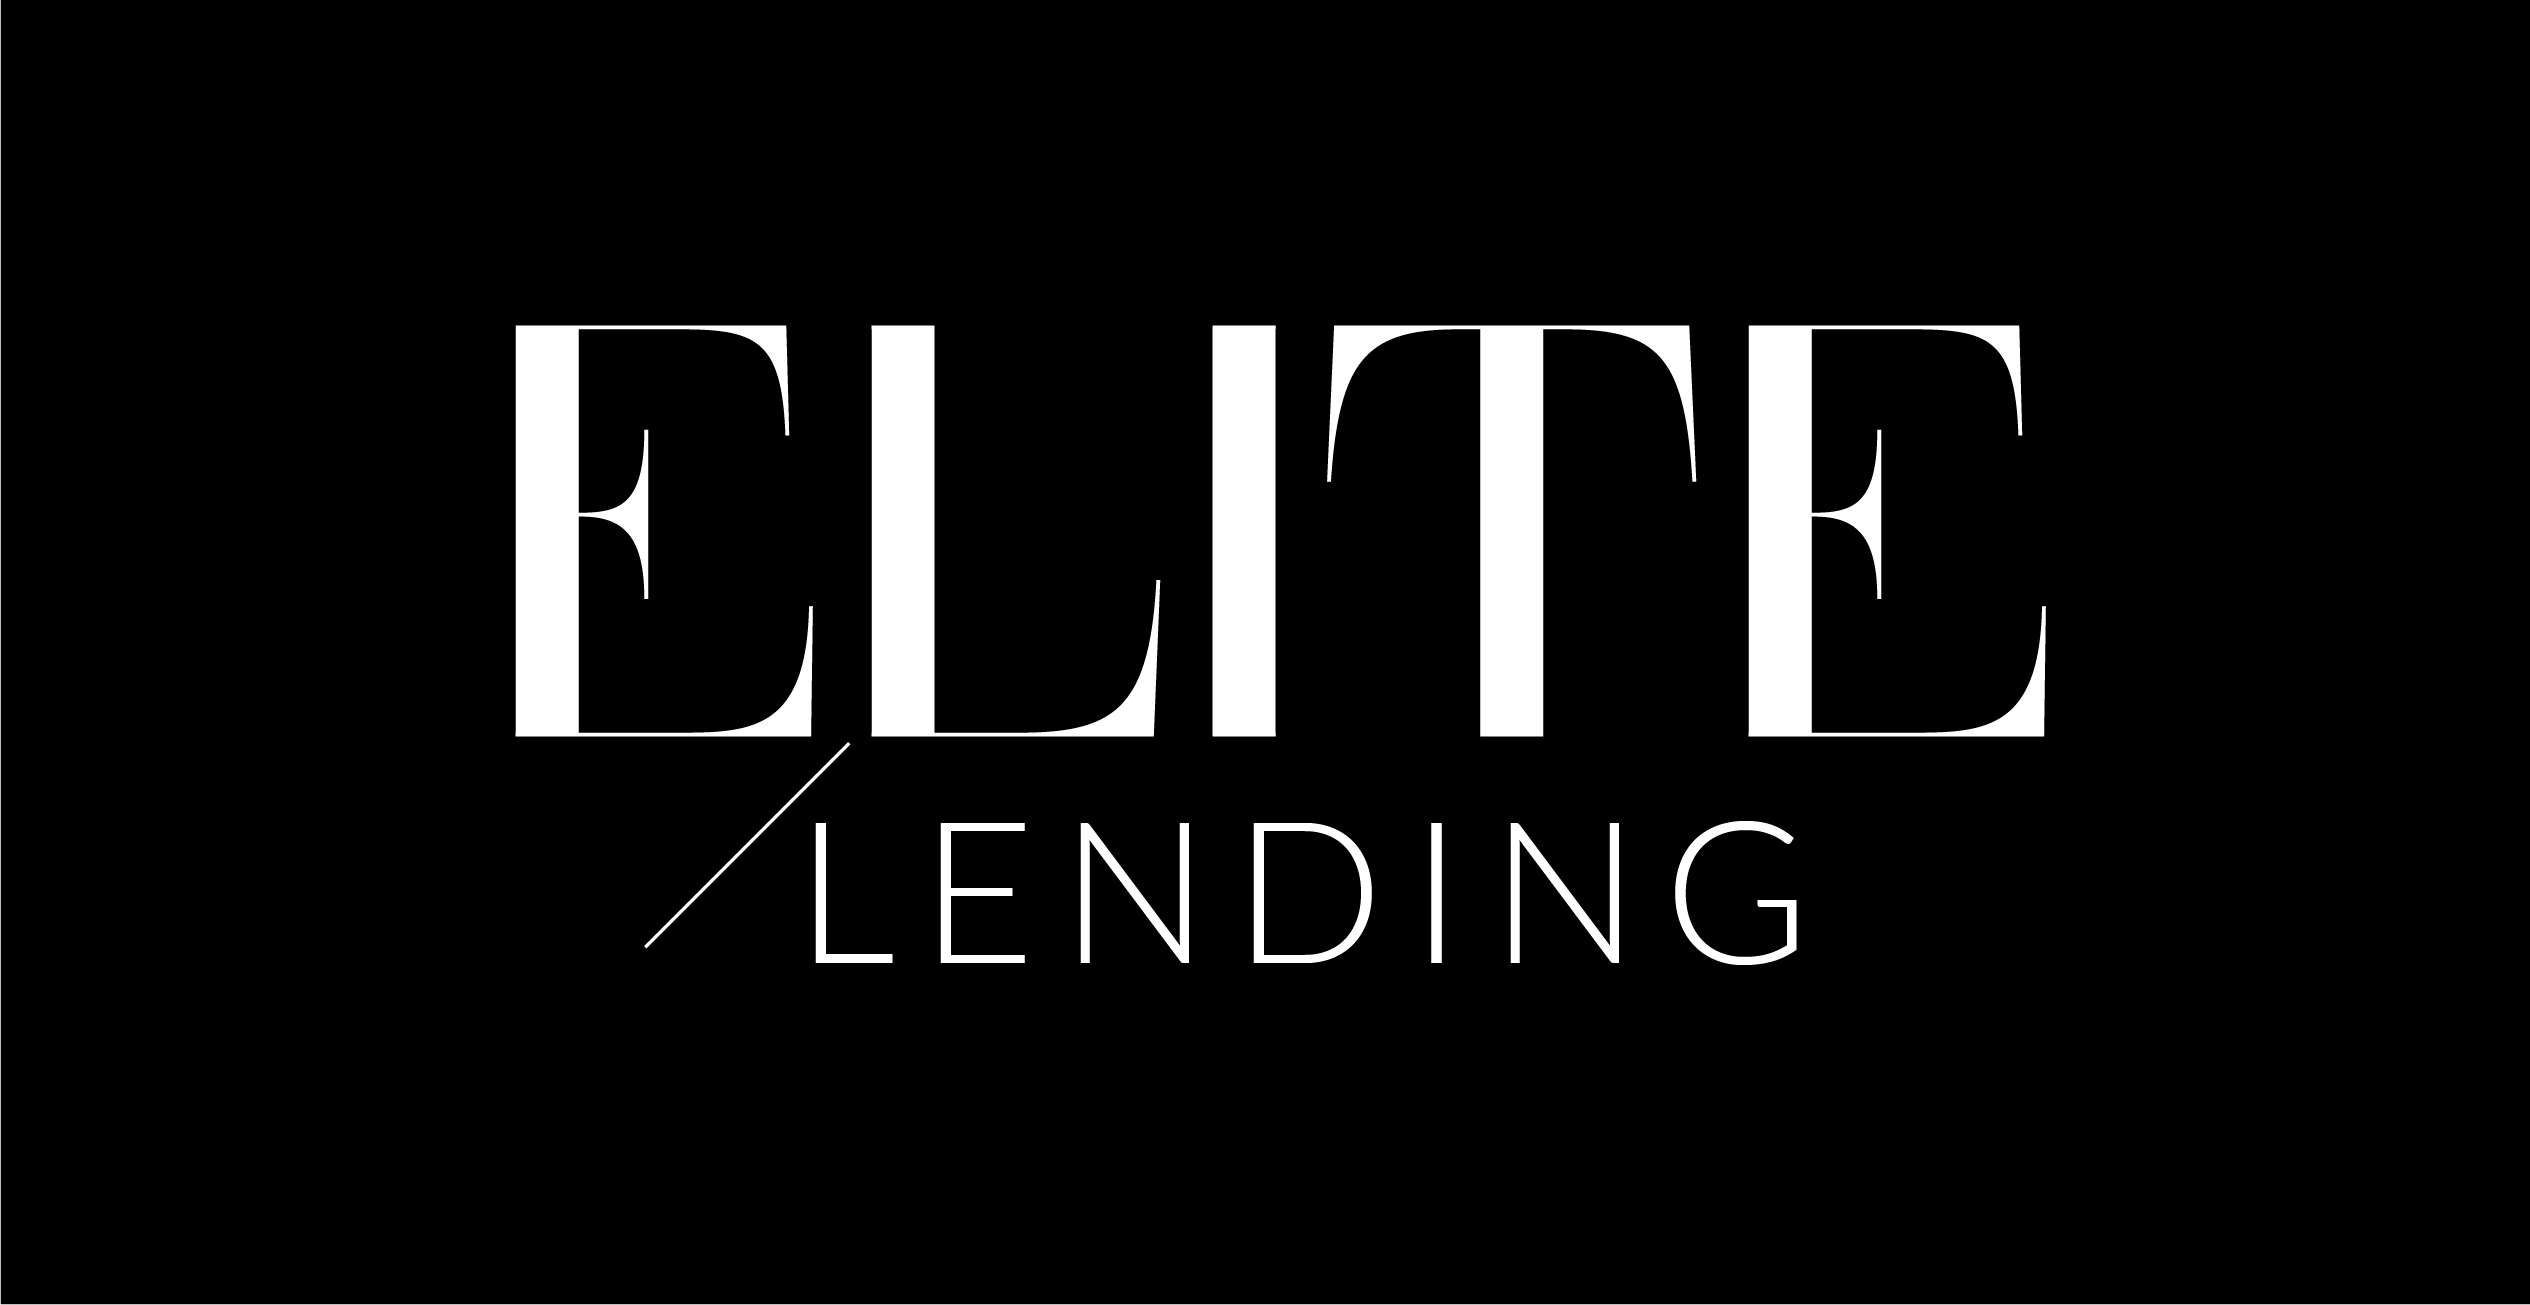 Elite Lending